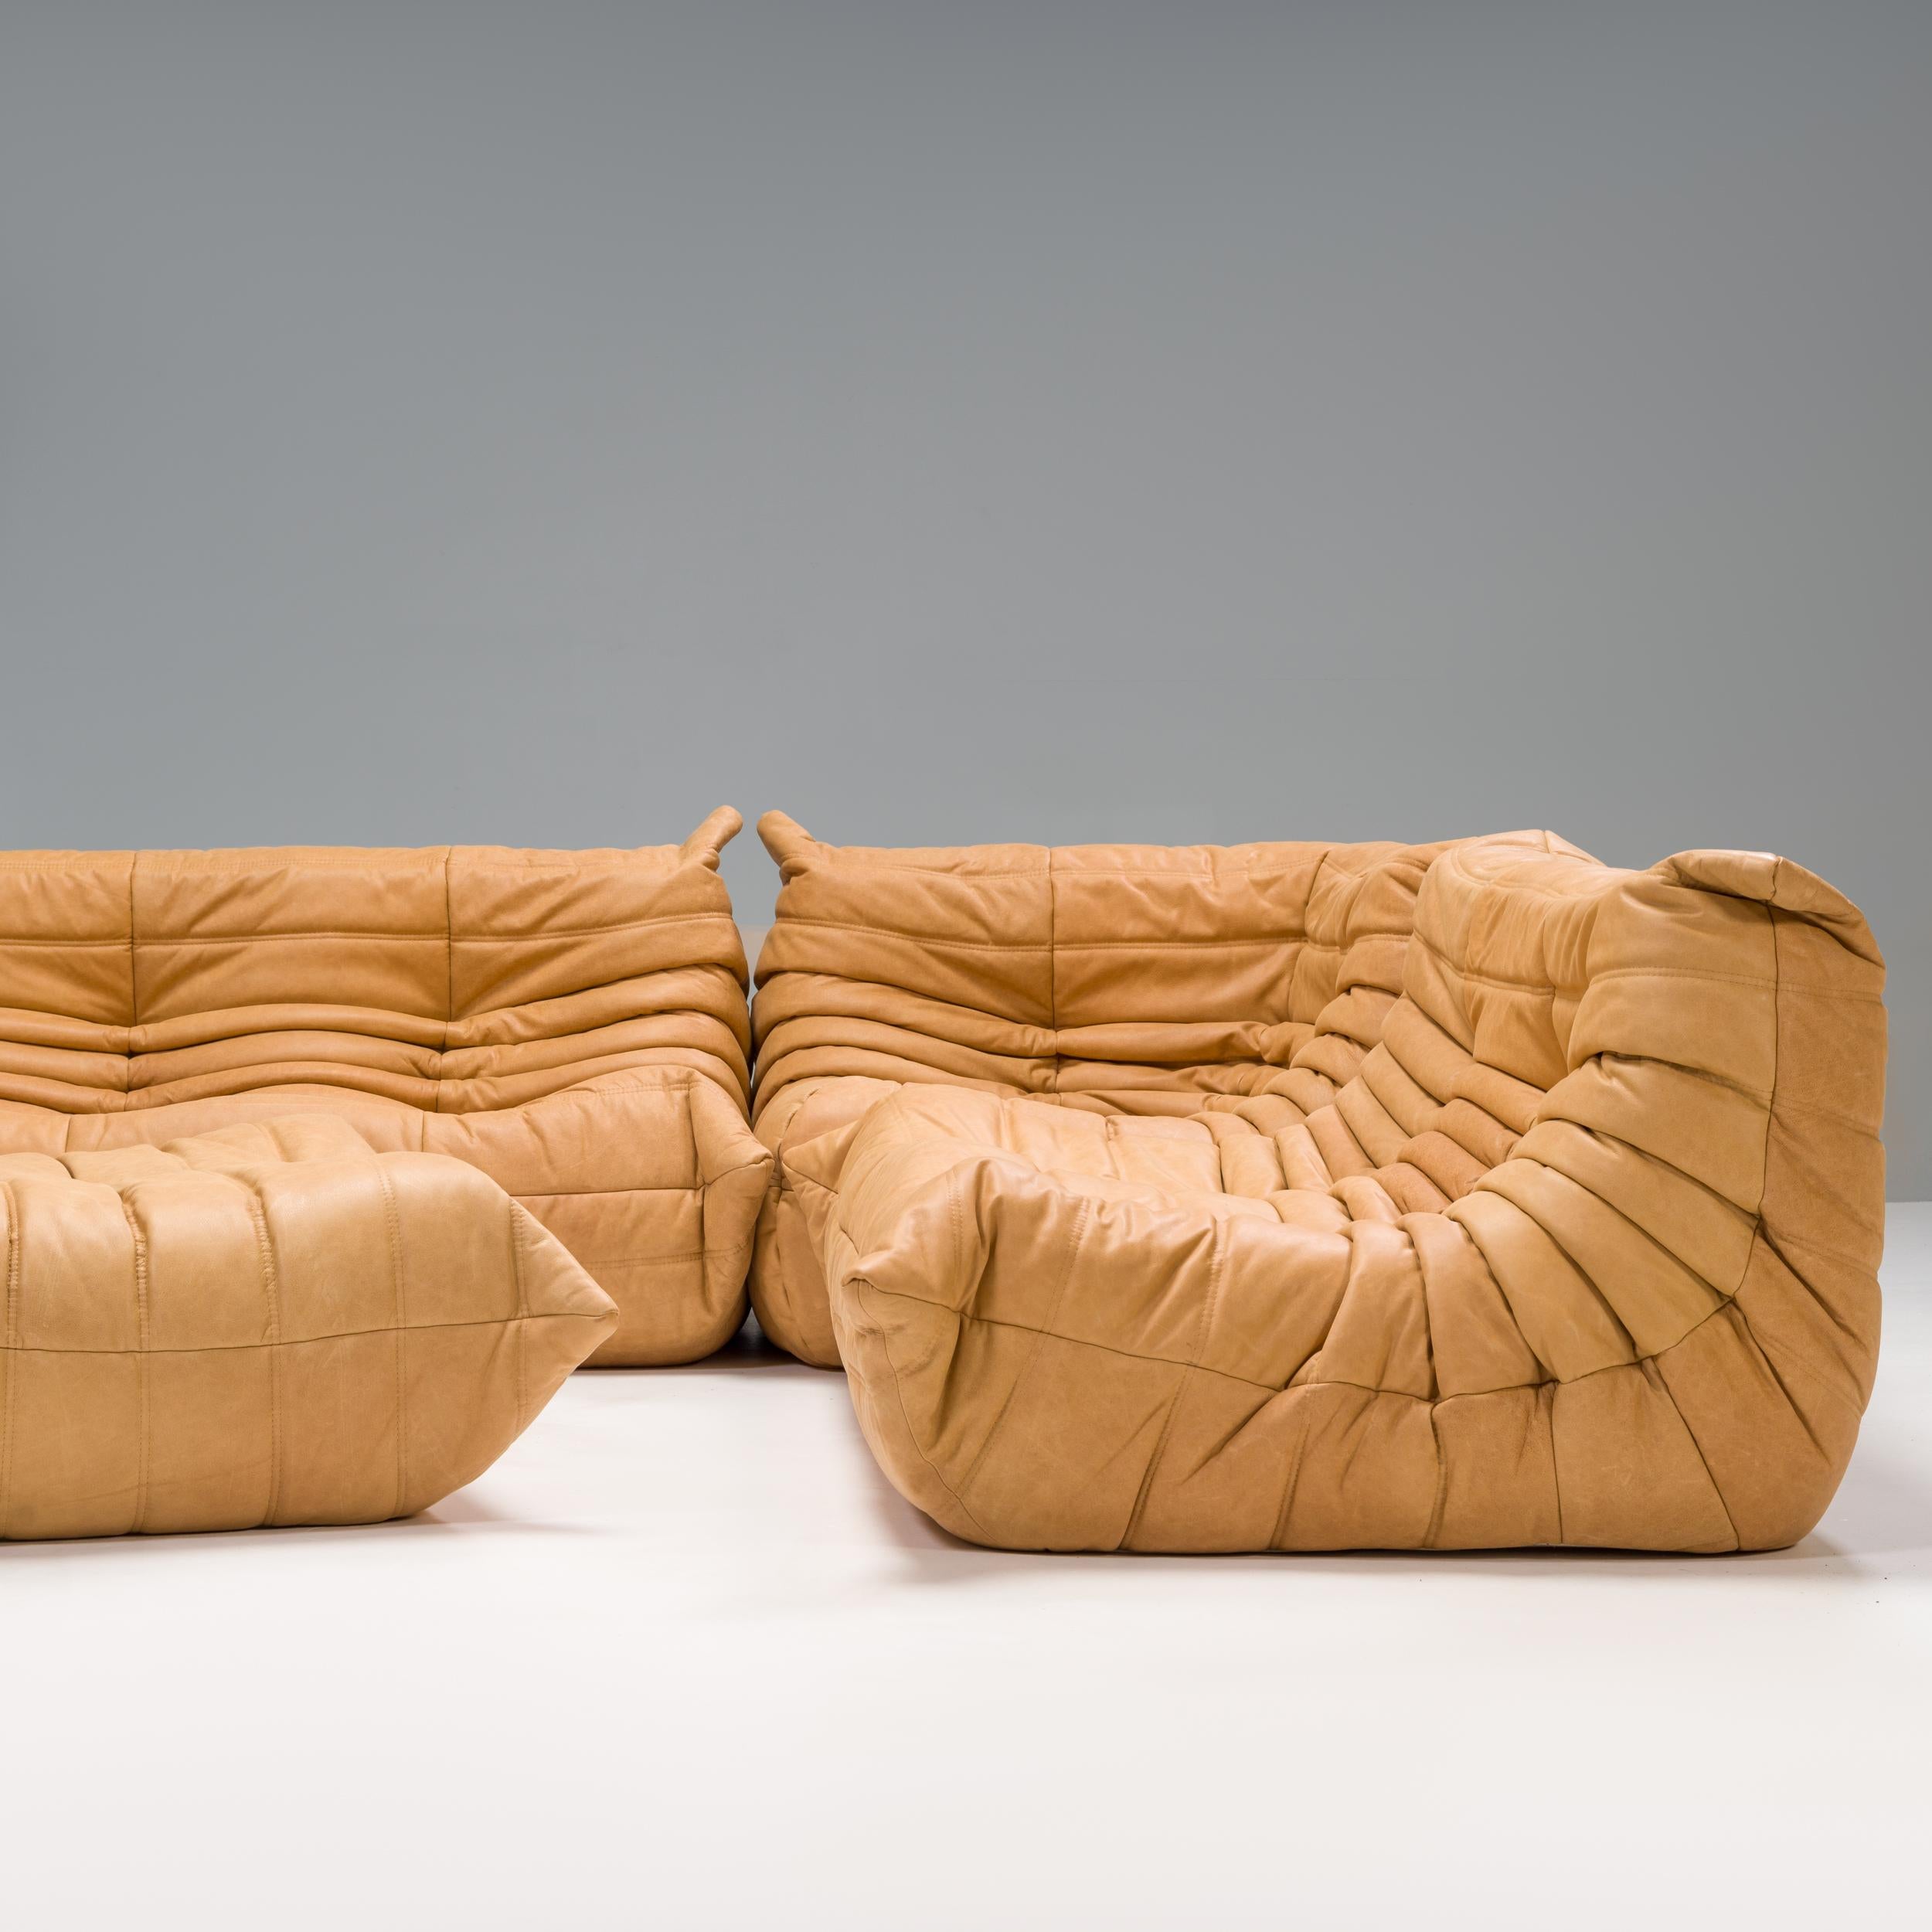 Das ikonische Ledersofa und der Sessel Togo, ursprünglich von Michel Ducaroy für Ligne Roset im Jahr 1973 entworfen, sind zu einem Designklassiker der Jahrhundertmitte geworden.

Die Sofas wurden neu gepolstert und mit einem weichen, geschmeidigen